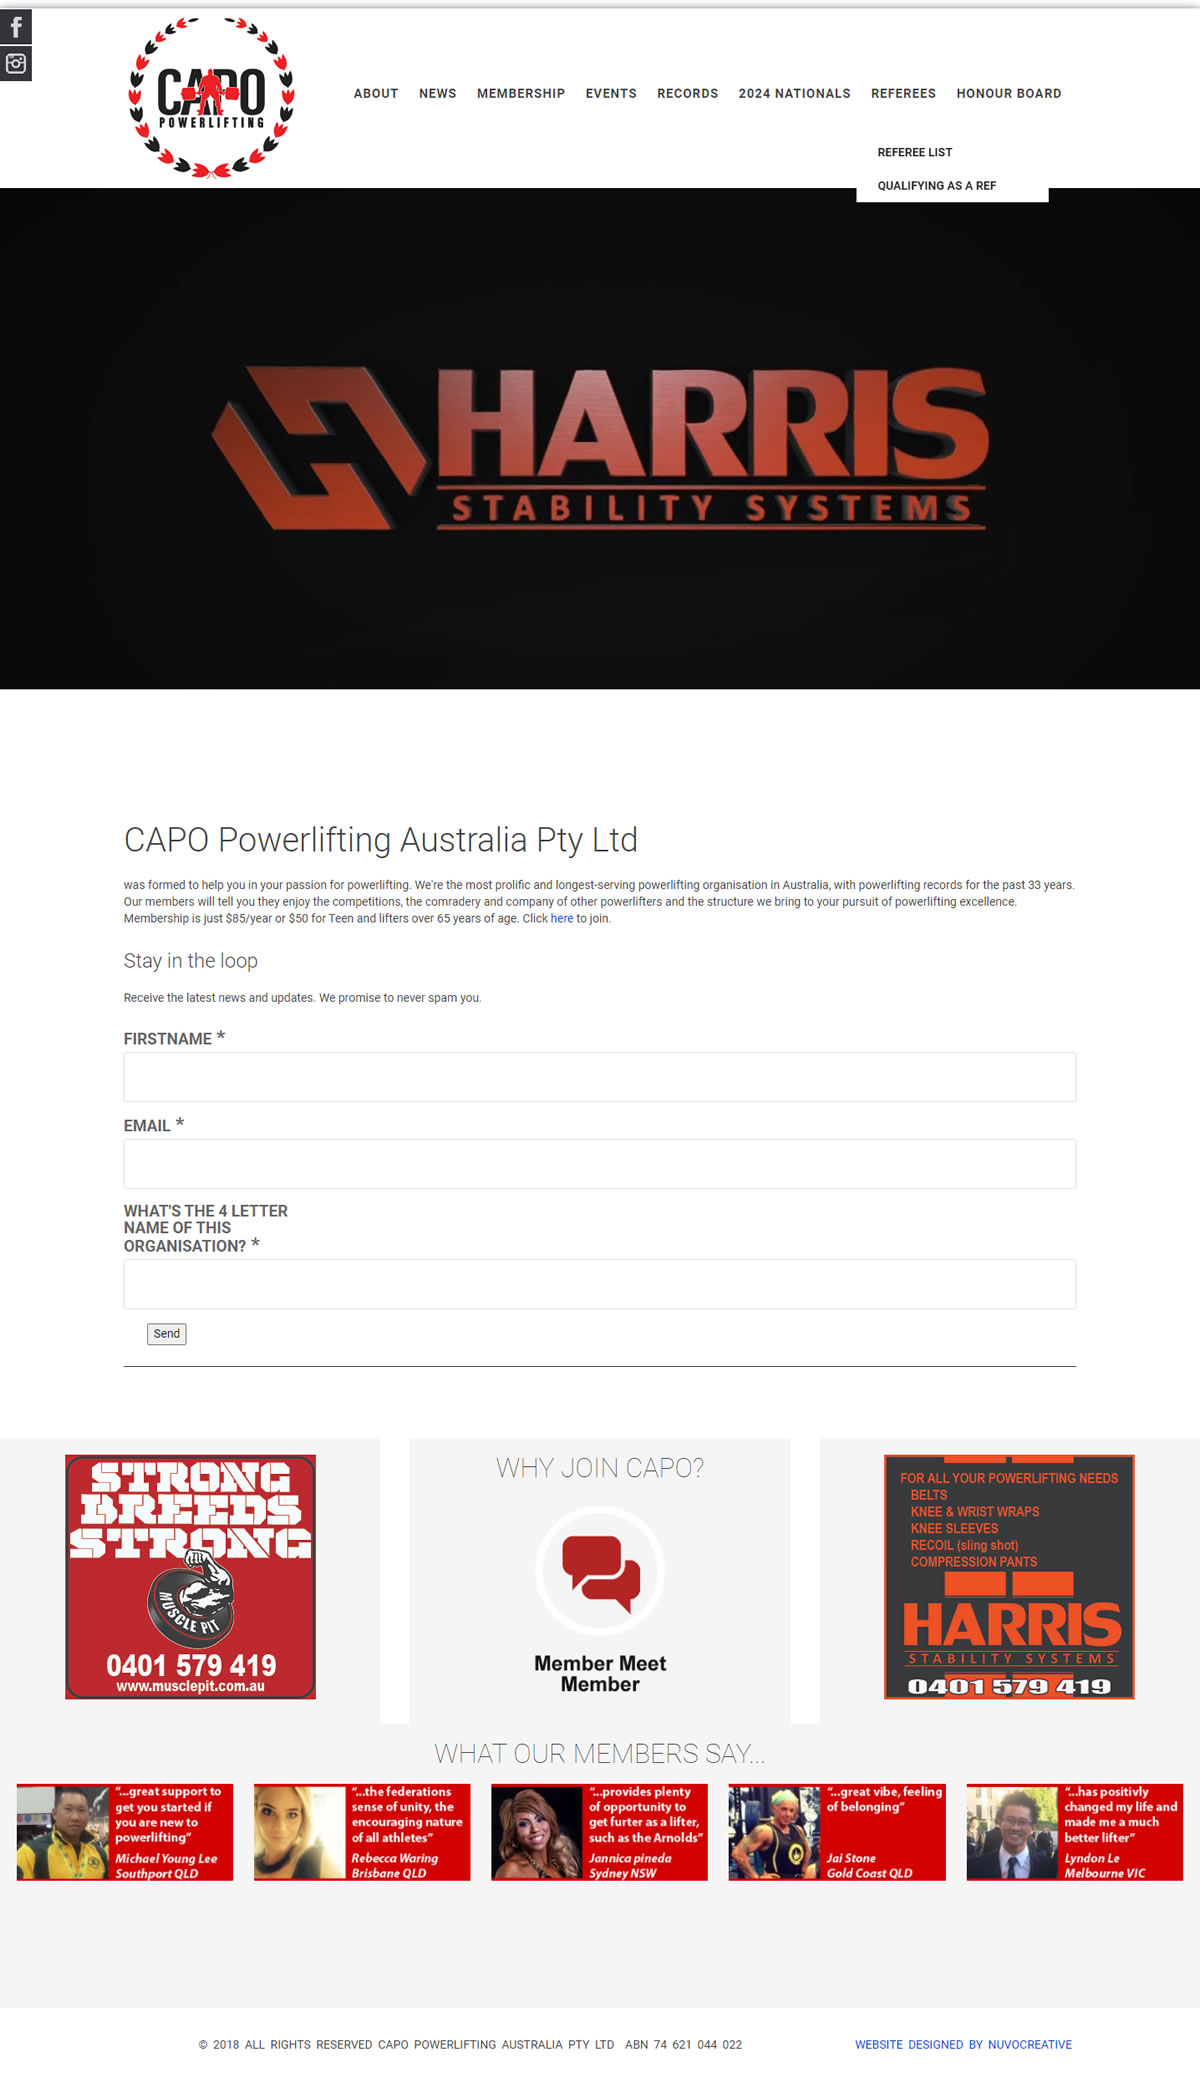 Visit Capopowerlifting.com.au